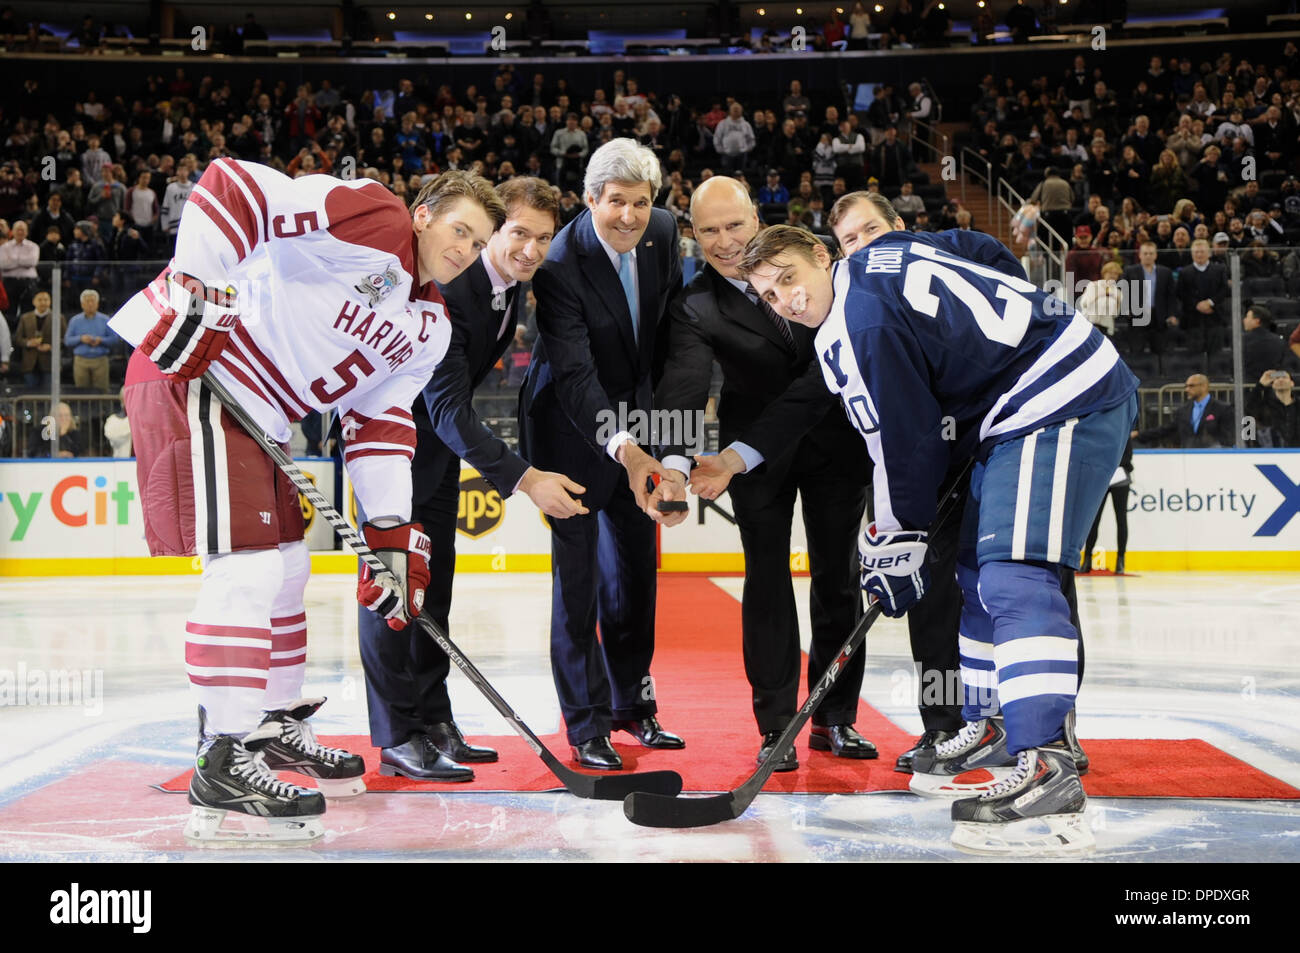 Le secrétaire d'Etat américain John Kerry rejoint les chefs de l'Harvard et Yale équipes de hockey sur glace, ainsi que sur les Rangers de New York dvd Dominic Moore et Mark Messier et joueurs à la retraite Mike Richter, pour la mise au jeu avant que les deux équipes universitaires rival joué au Madison Square Garden le 11 janvier 2014 à New York, NY. Banque D'Images